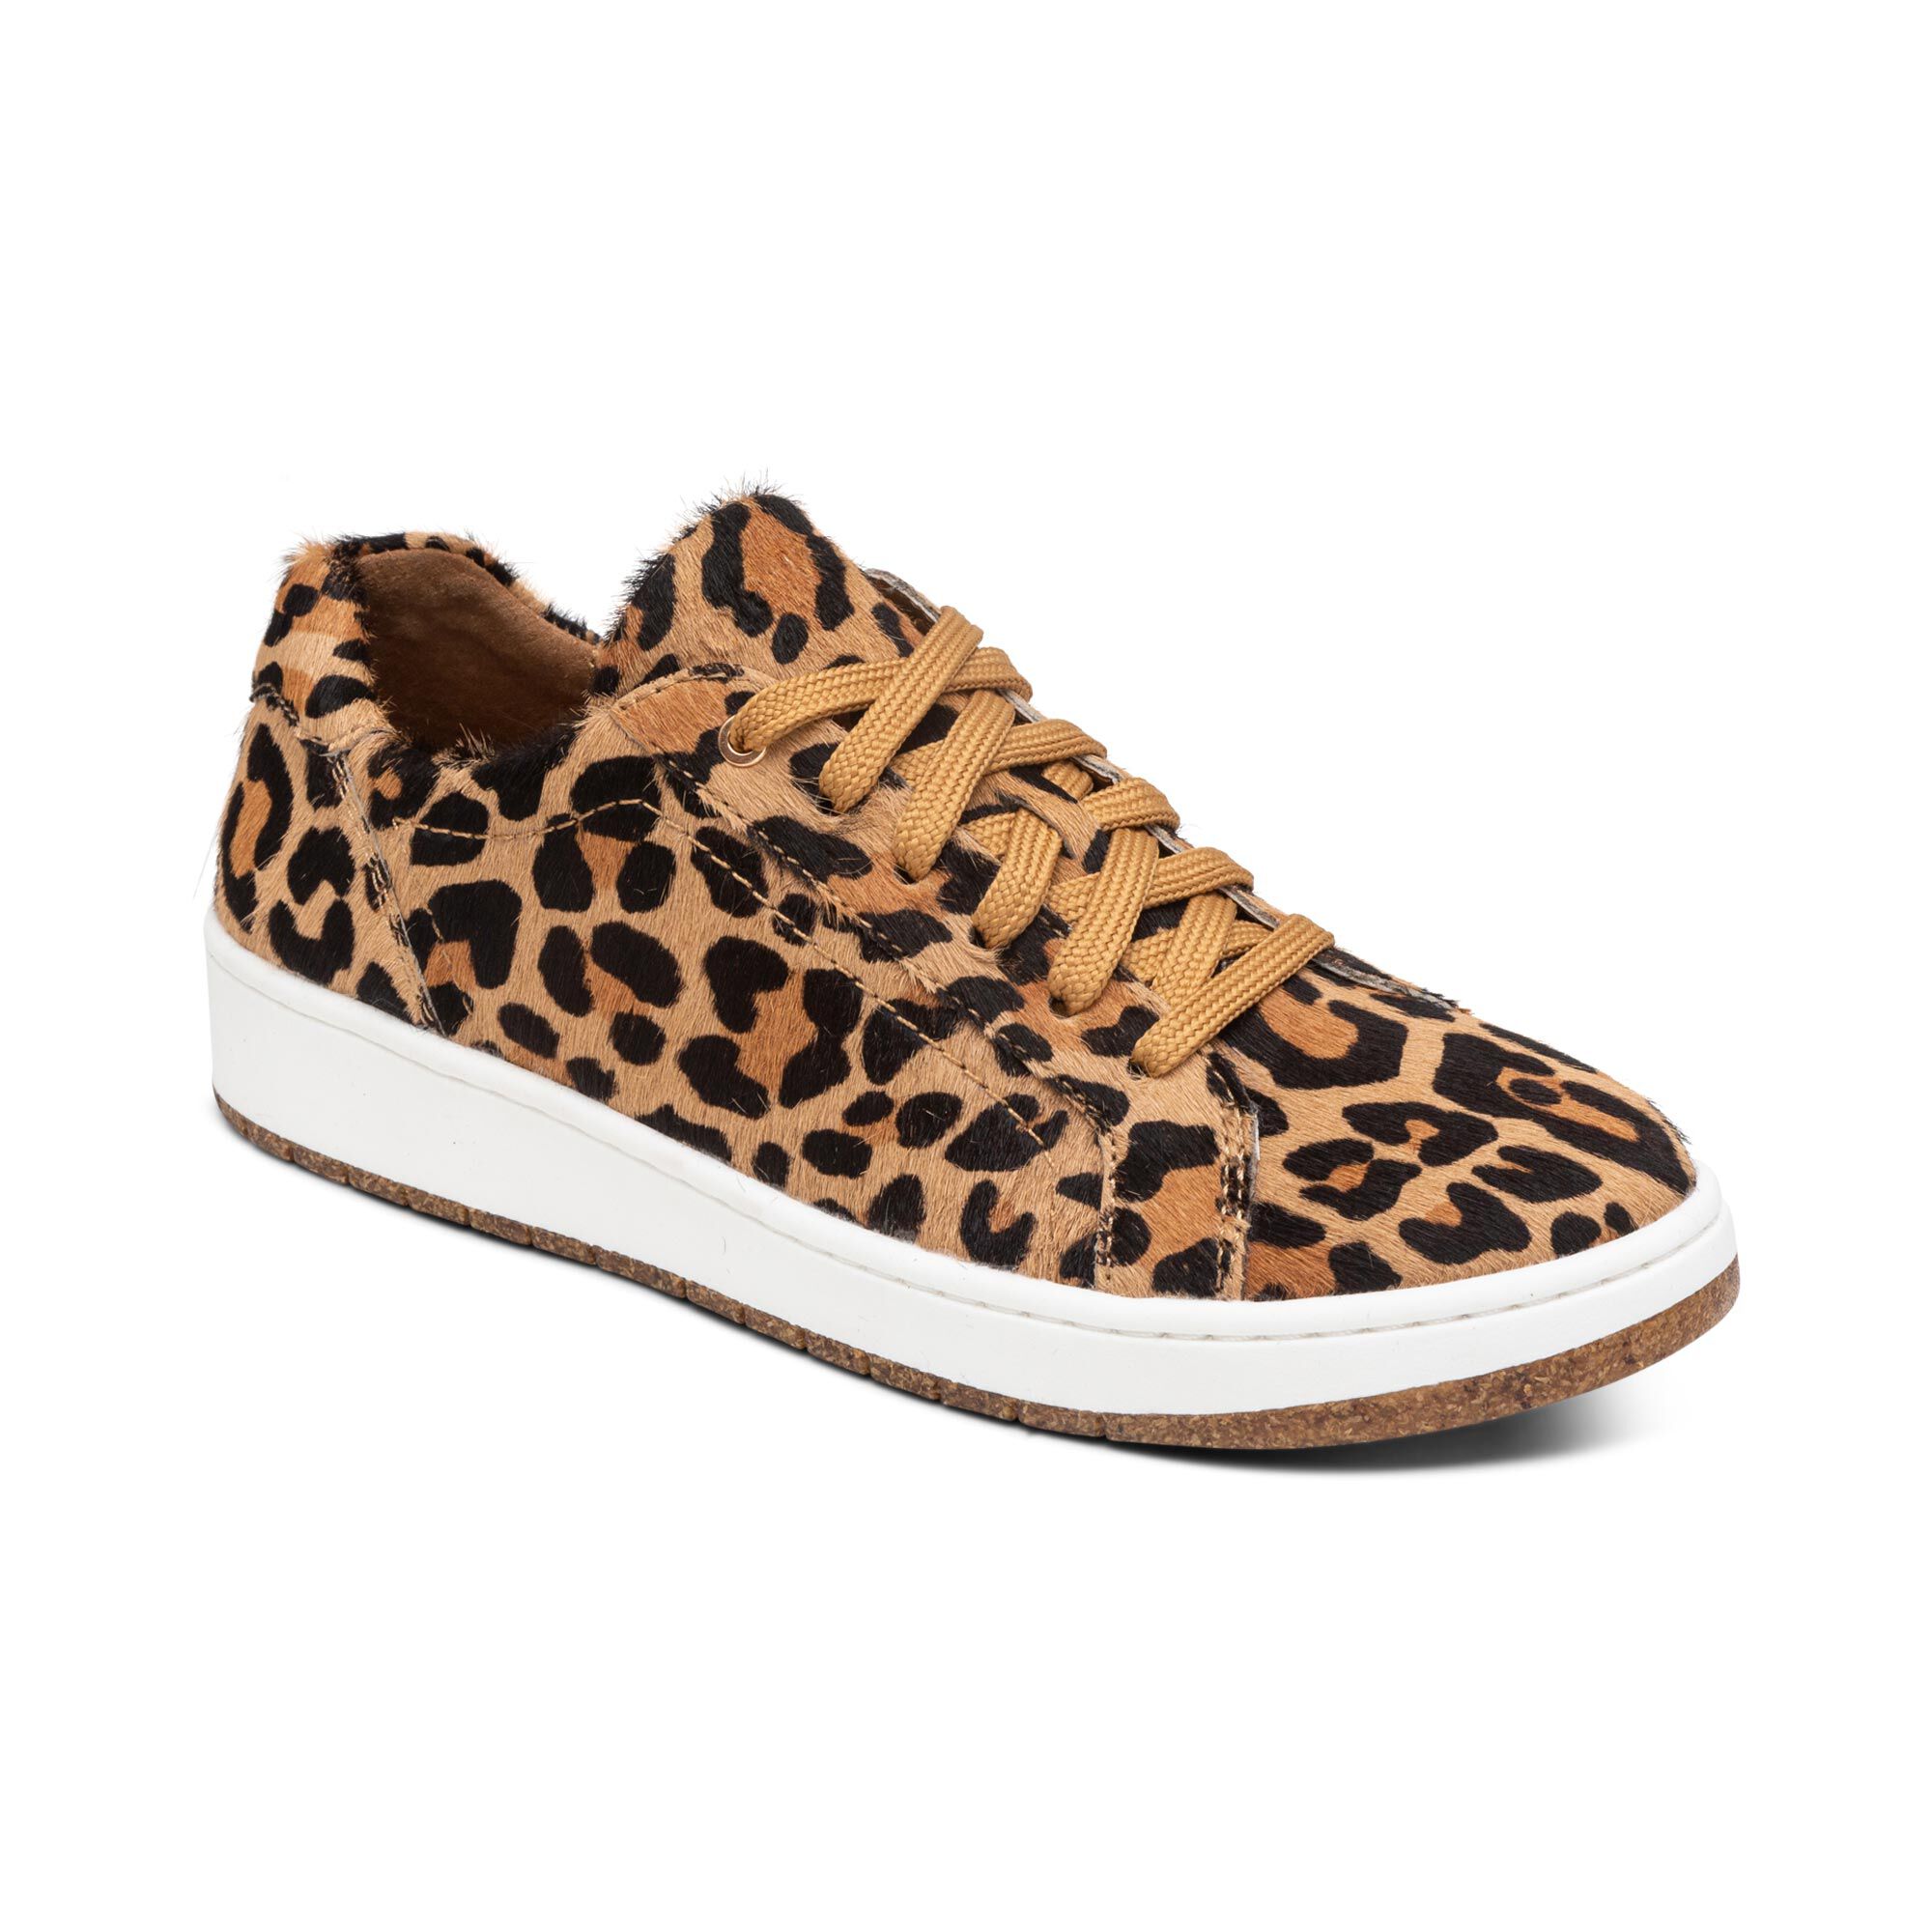 leopard+sneakers | Nordstrom